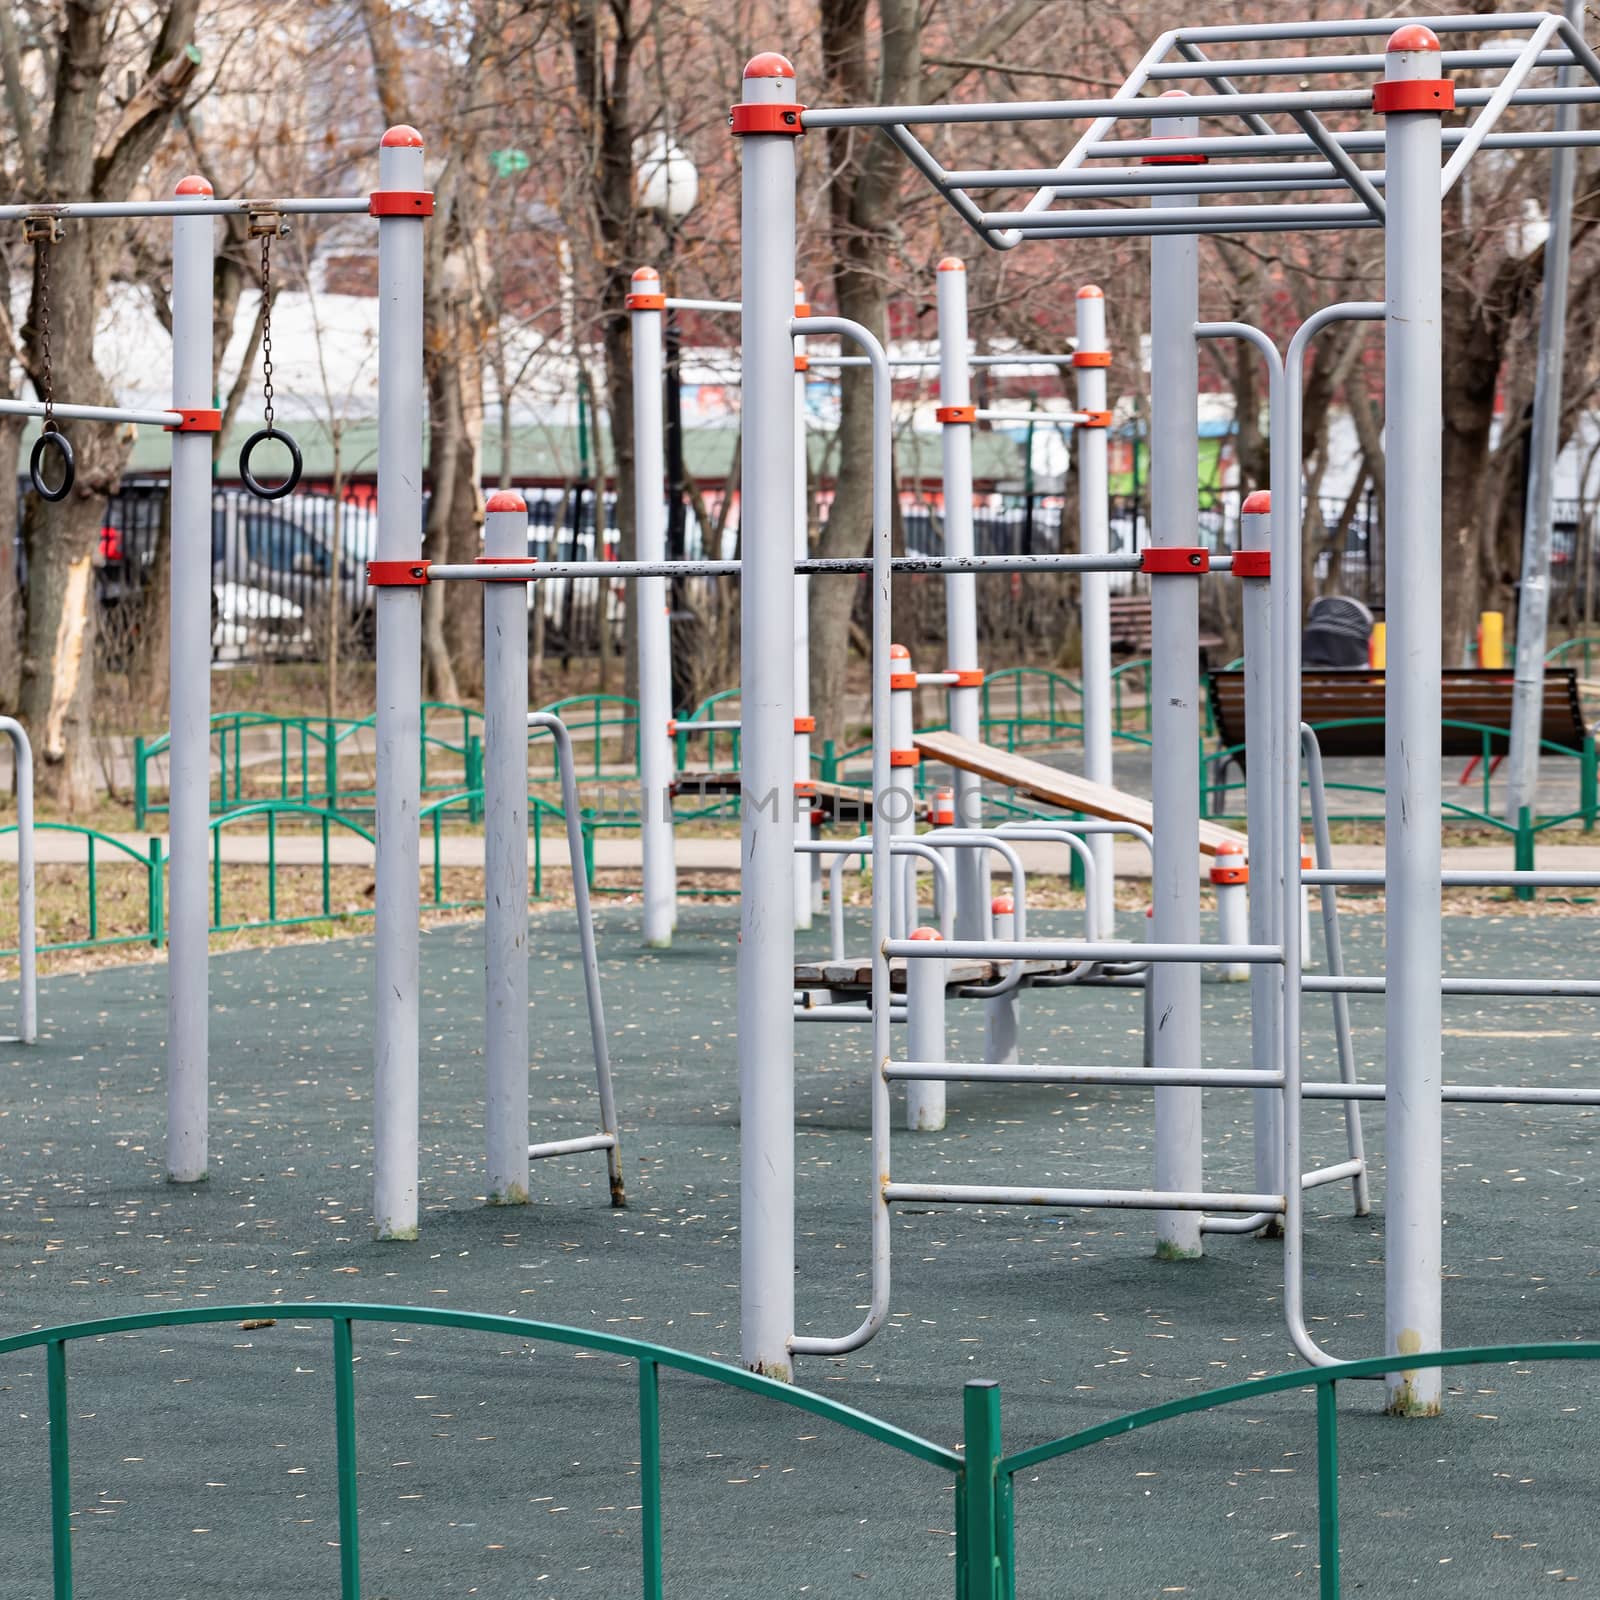 Empty children's playground with no children by bonilook